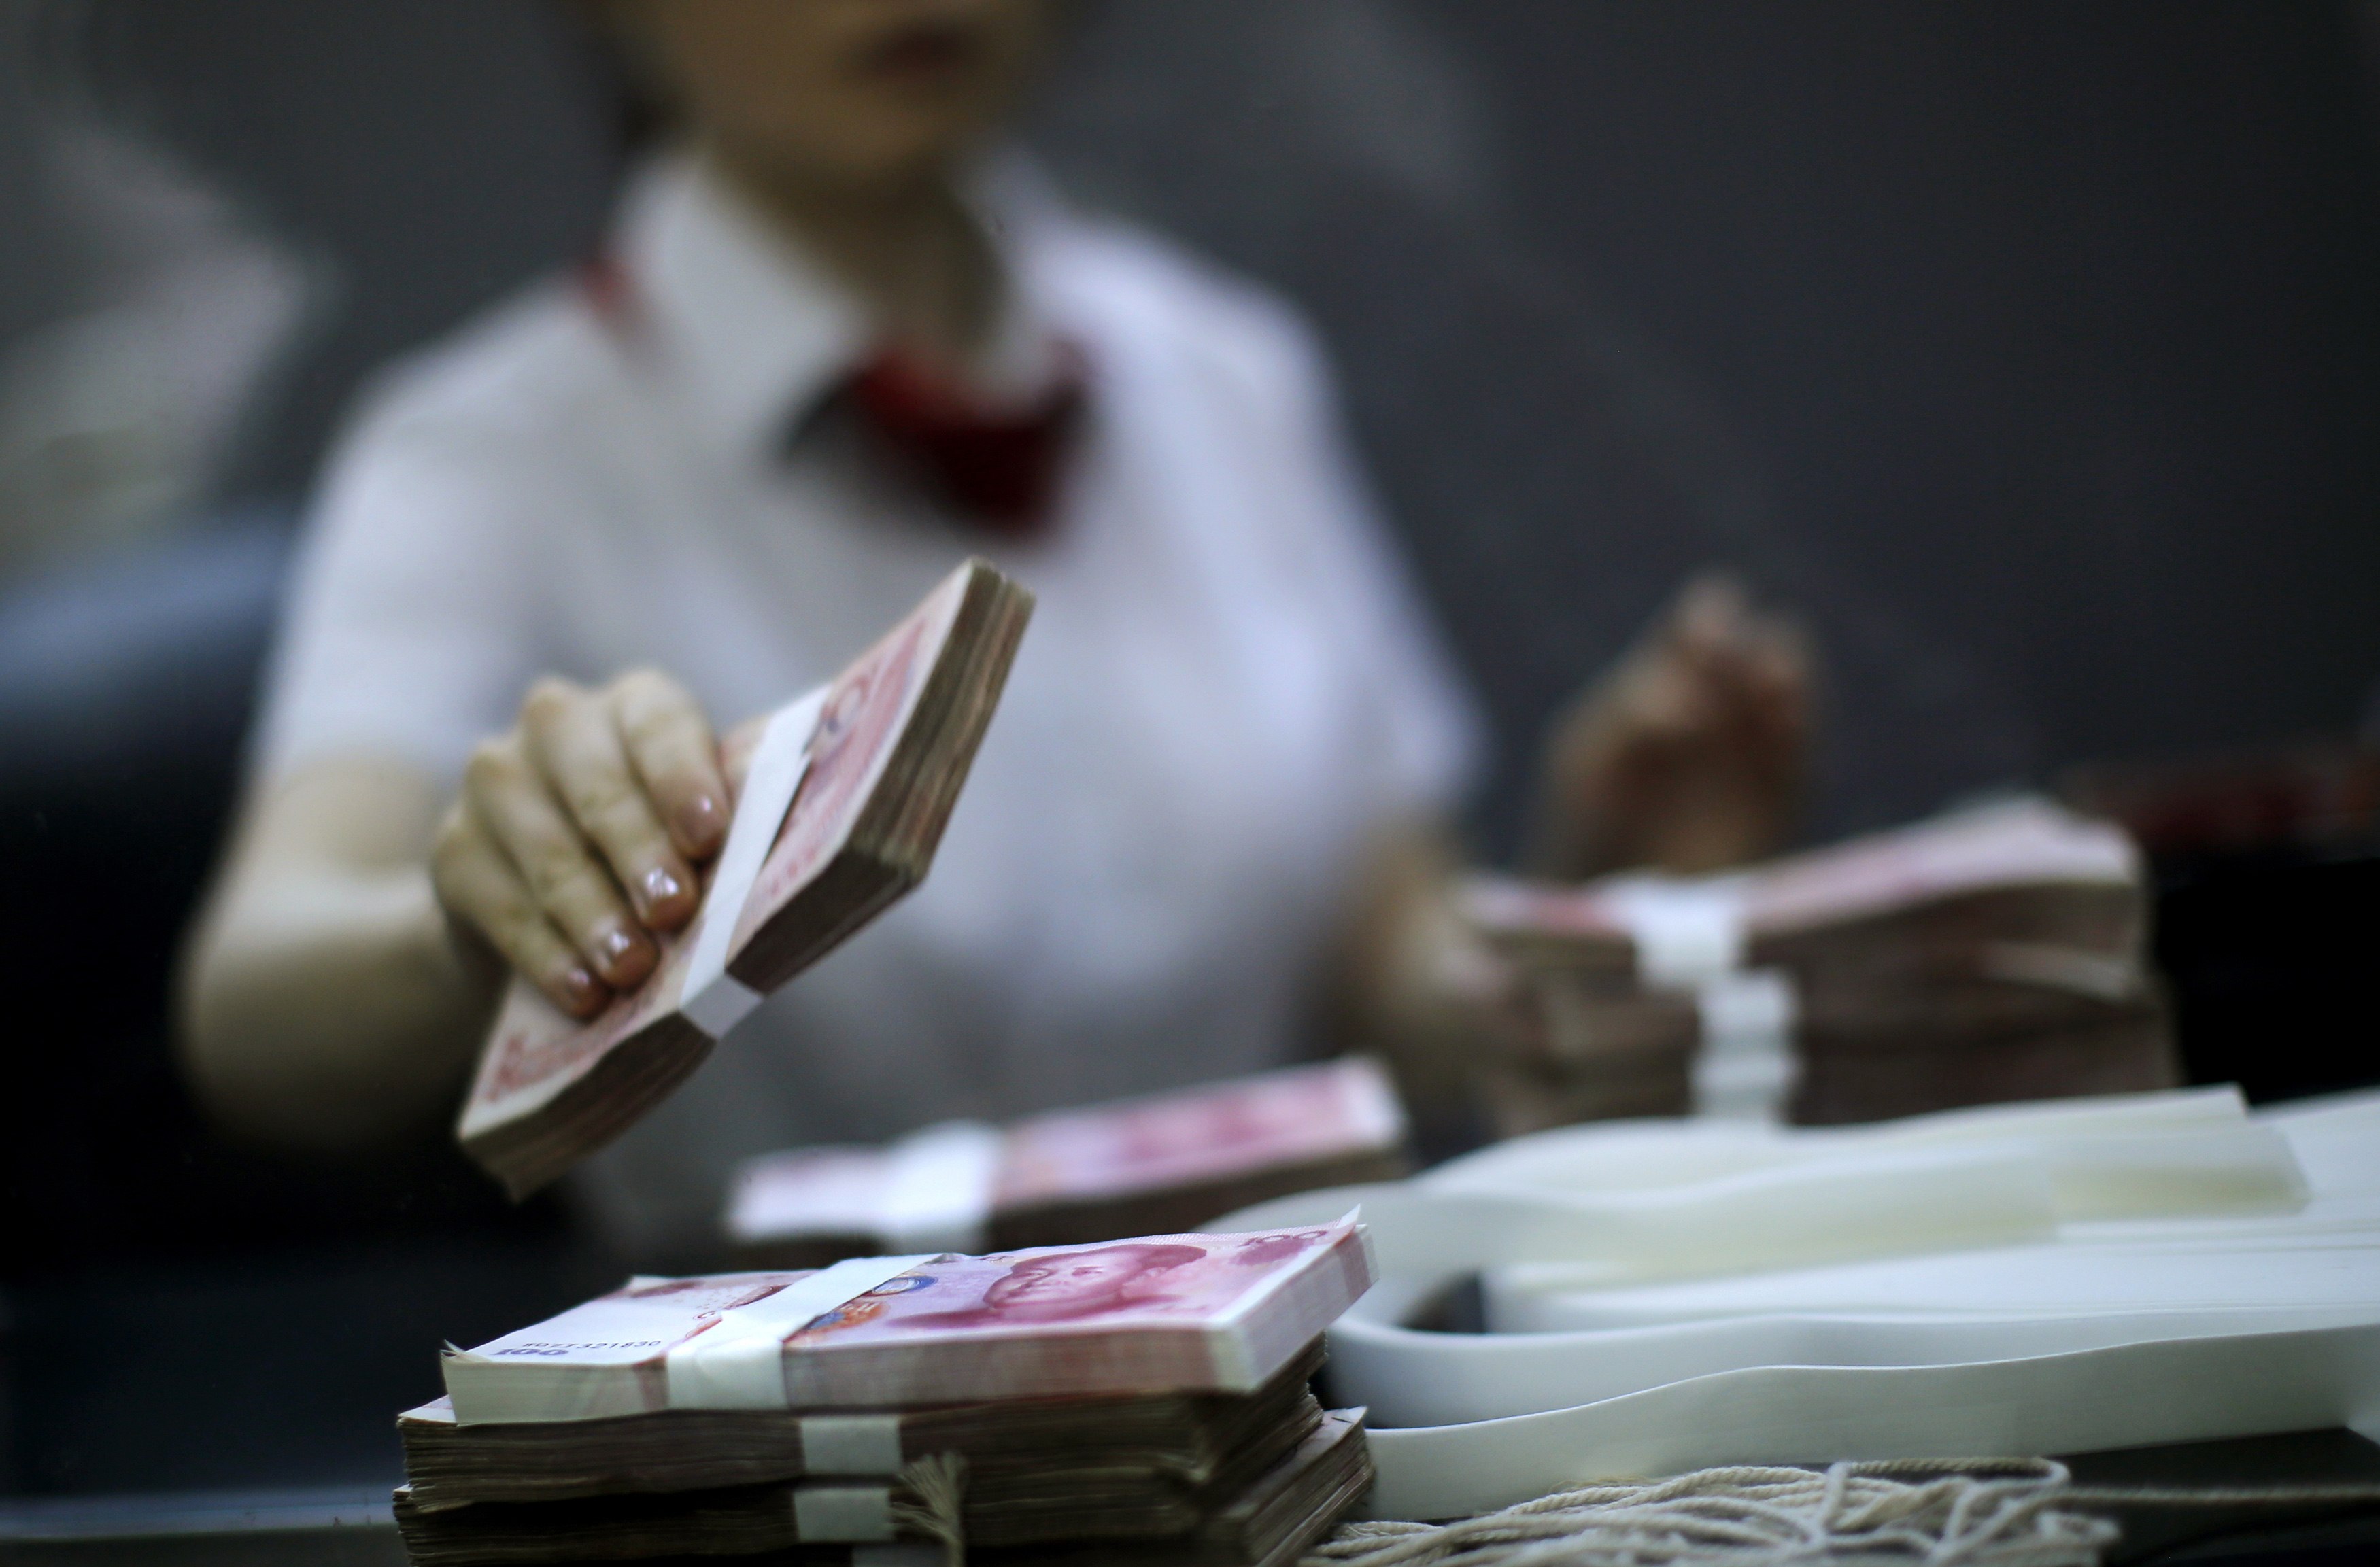 Αντικατάσταση του κεντρικού τραπεζίτη συζητά η κινεζική κυβέρνηση